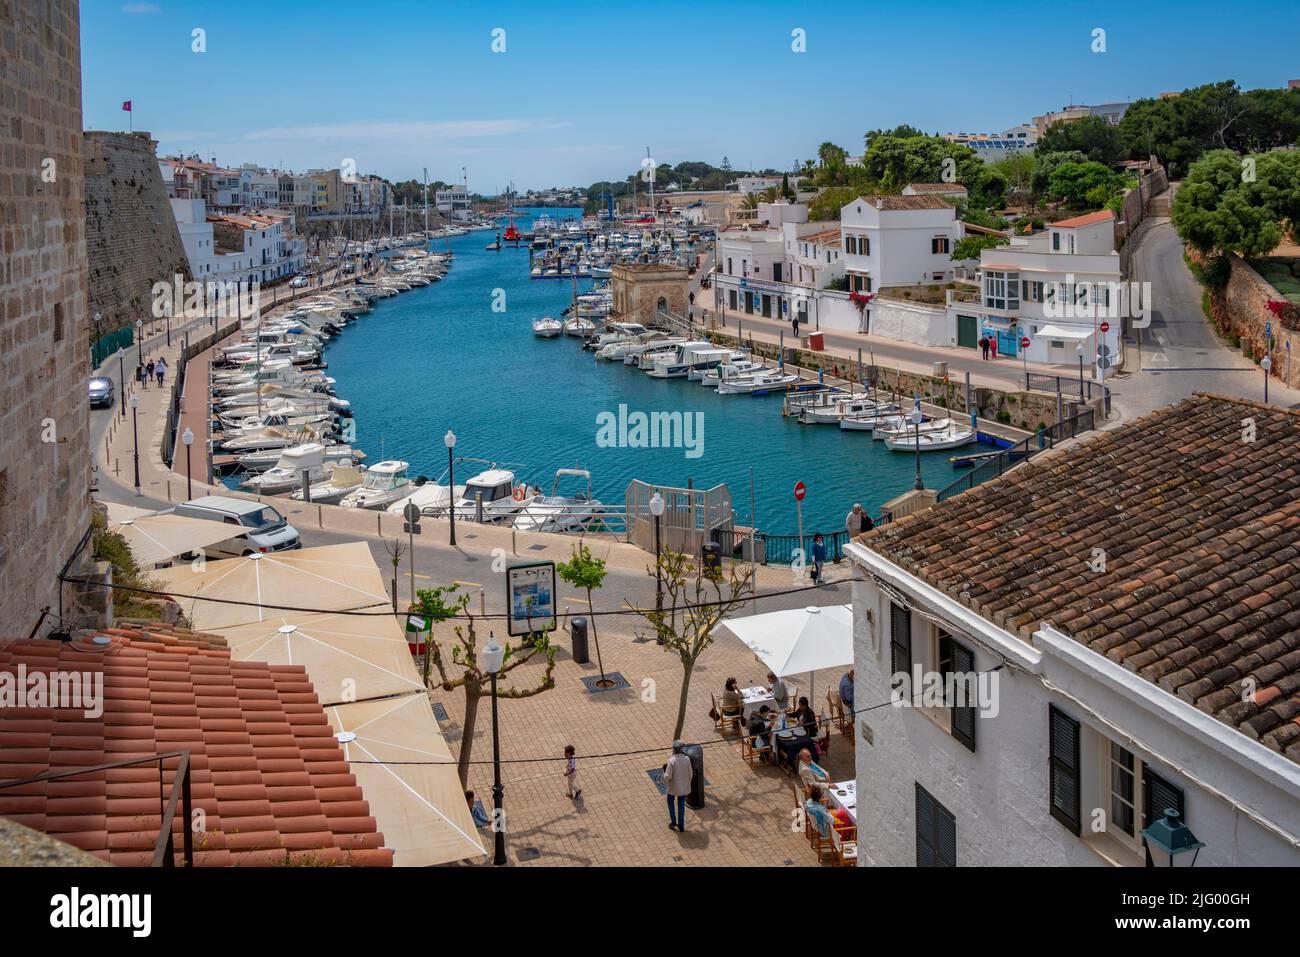 Vista del puerto deportivo desde una posición elevada, Ciutadella, Menorca, Islas Baleares, España, Mediterráneo, Europa Foto de stock